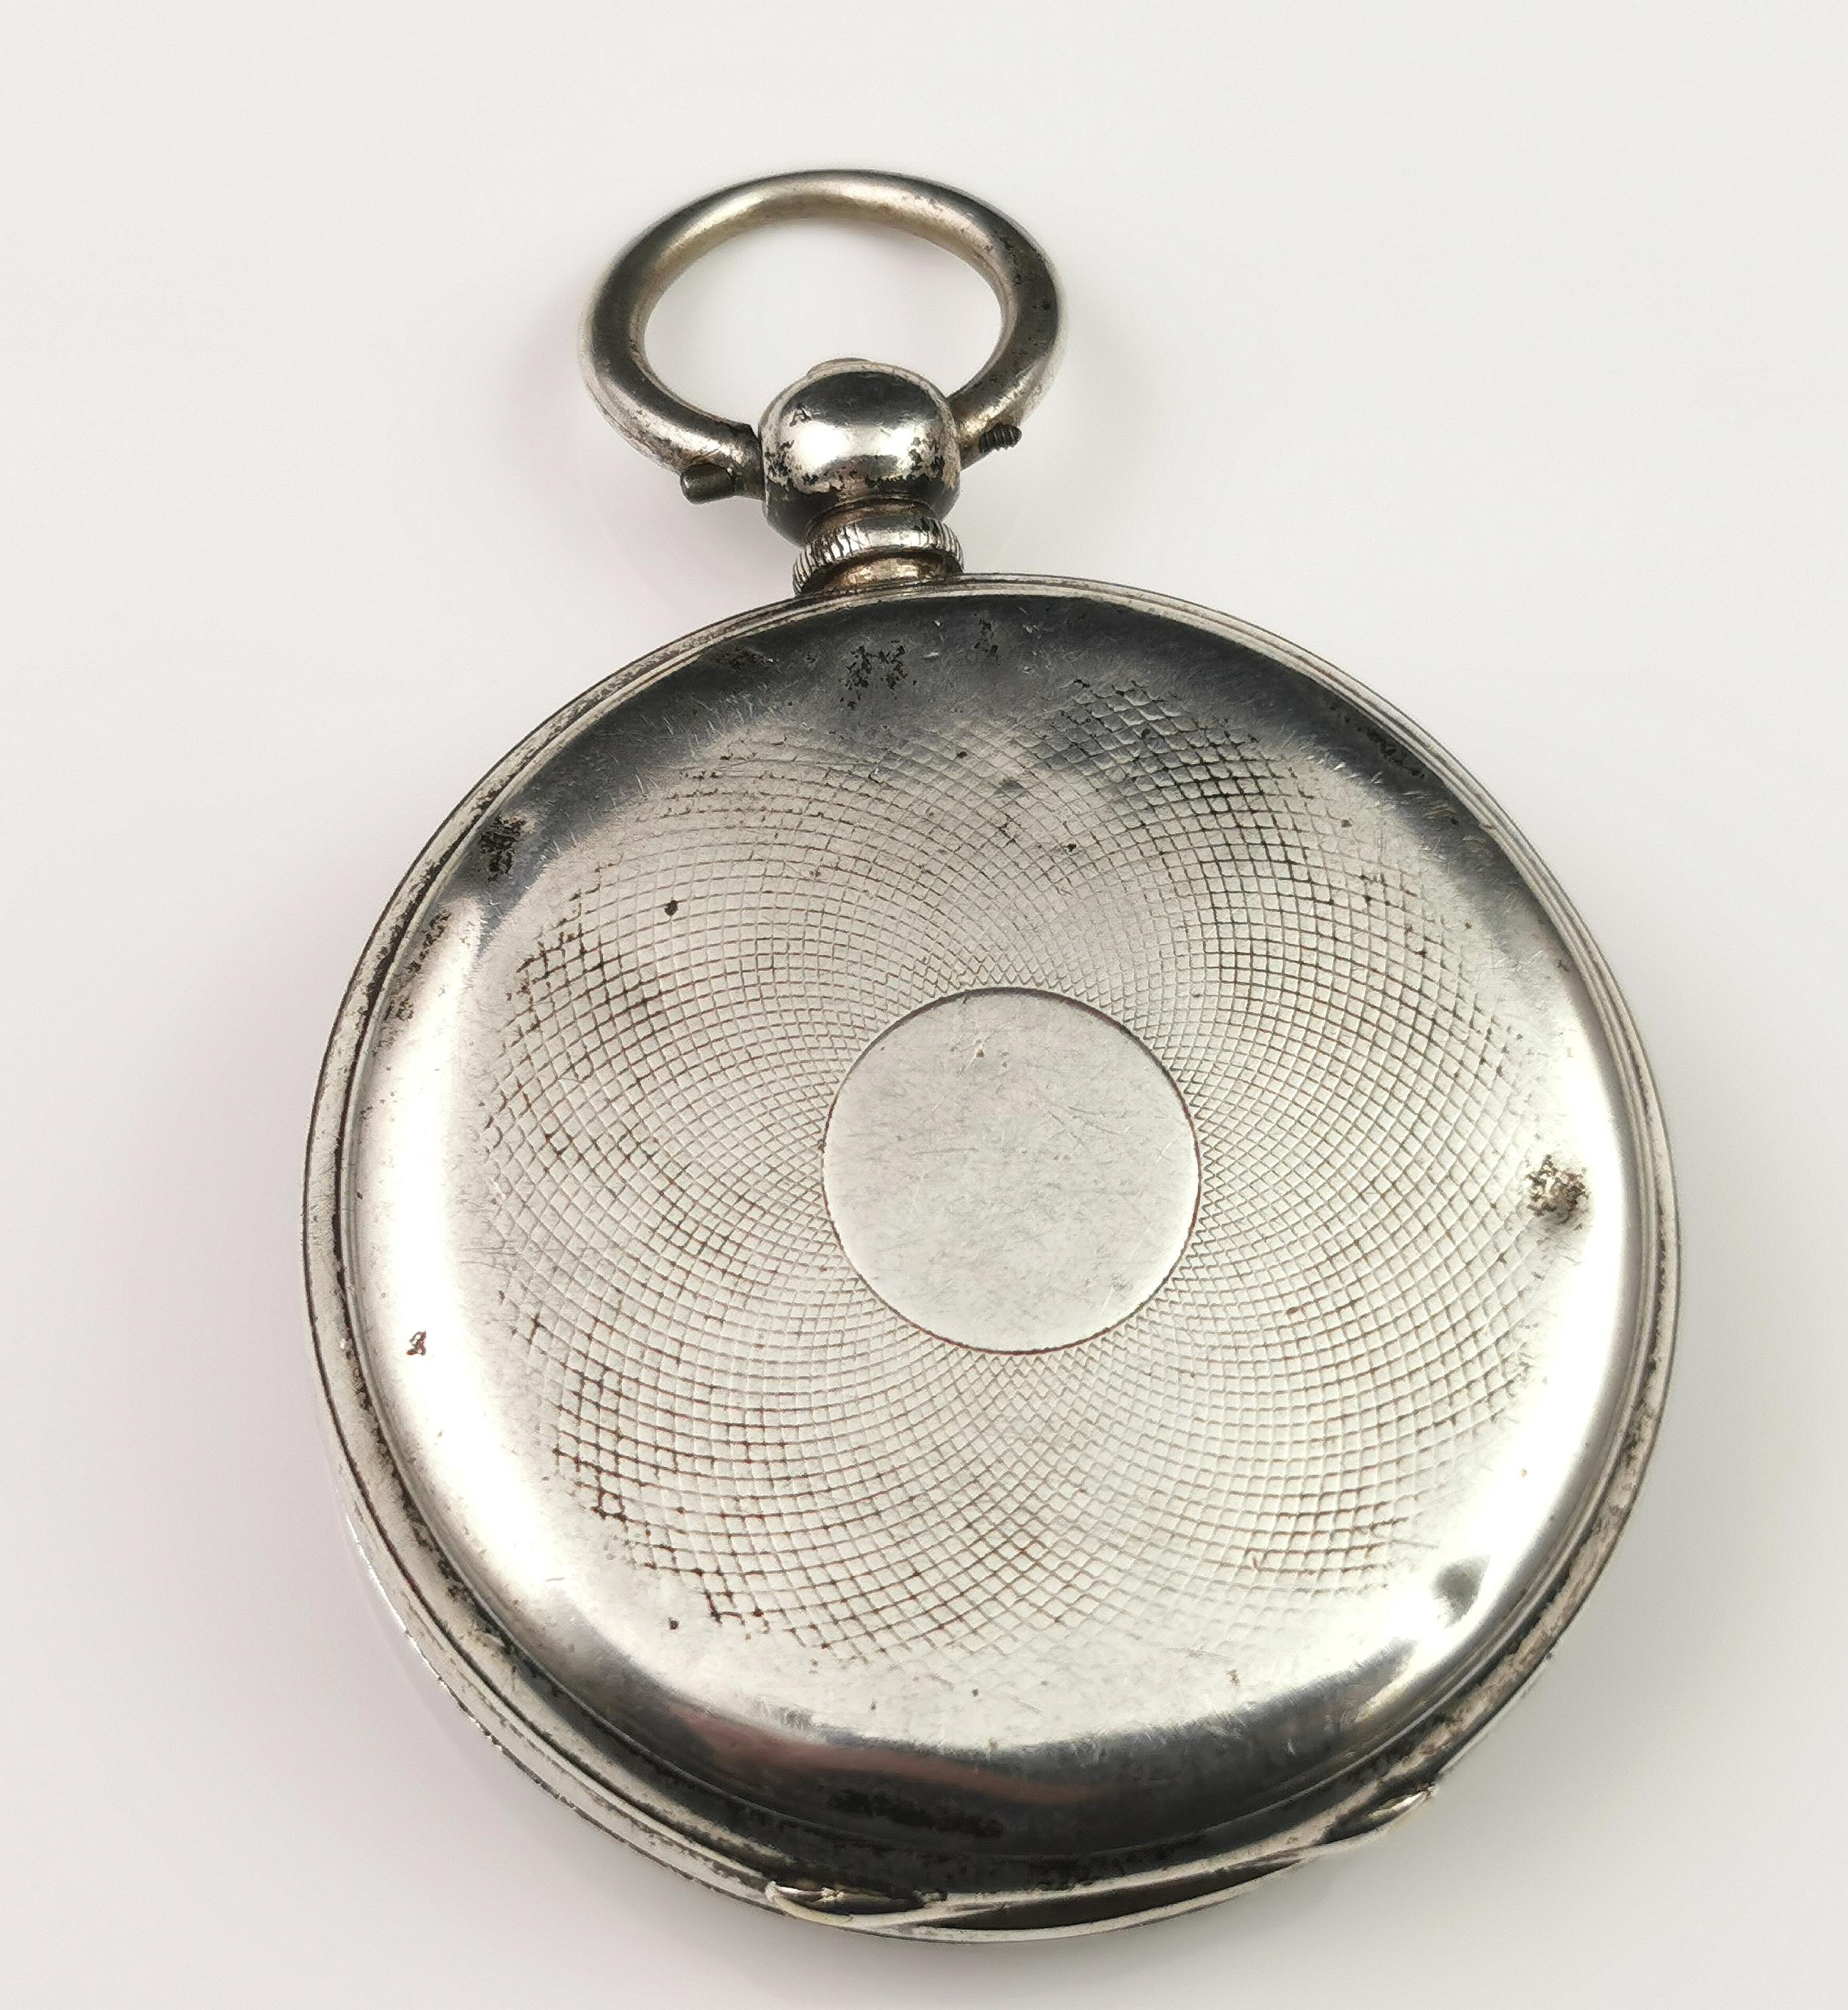 Eine hübsche antike Taschenuhr mit Sterlingsilbergehäuse.

Das Gehäuse ist vollständig aus Sterlingsilber, 1884, Alfred Bedford für Waltham Watch Company, gestempelt.

Sie hat ein weißes Emaille-Zifferblatt mit schwarzen römischen Ziffern und blauen